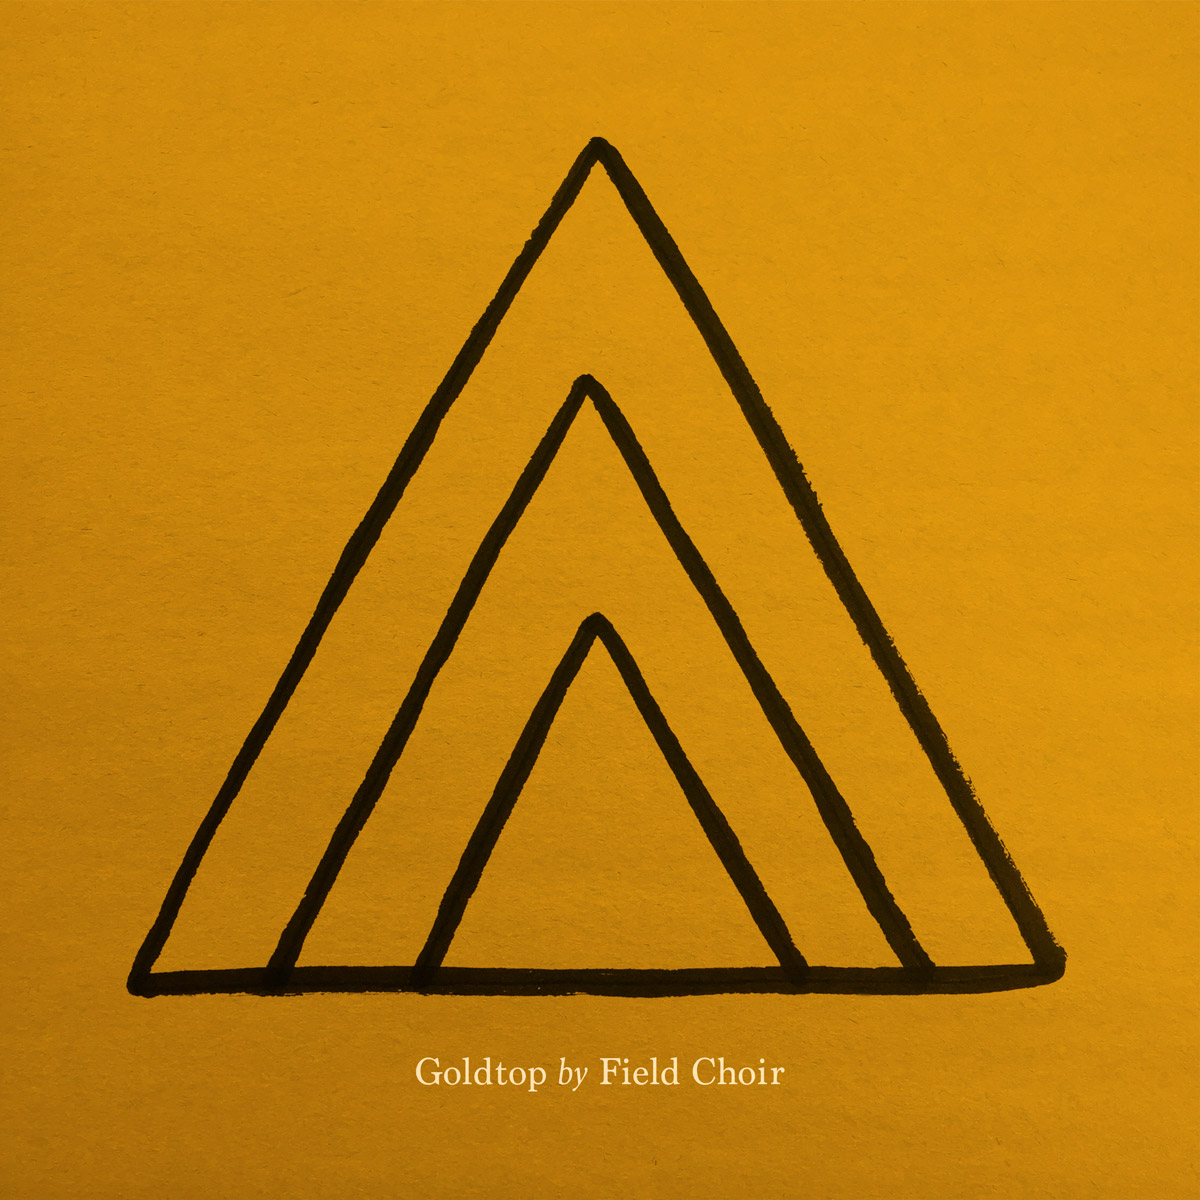 Field-Choir-Goldtop-CDR.jpg